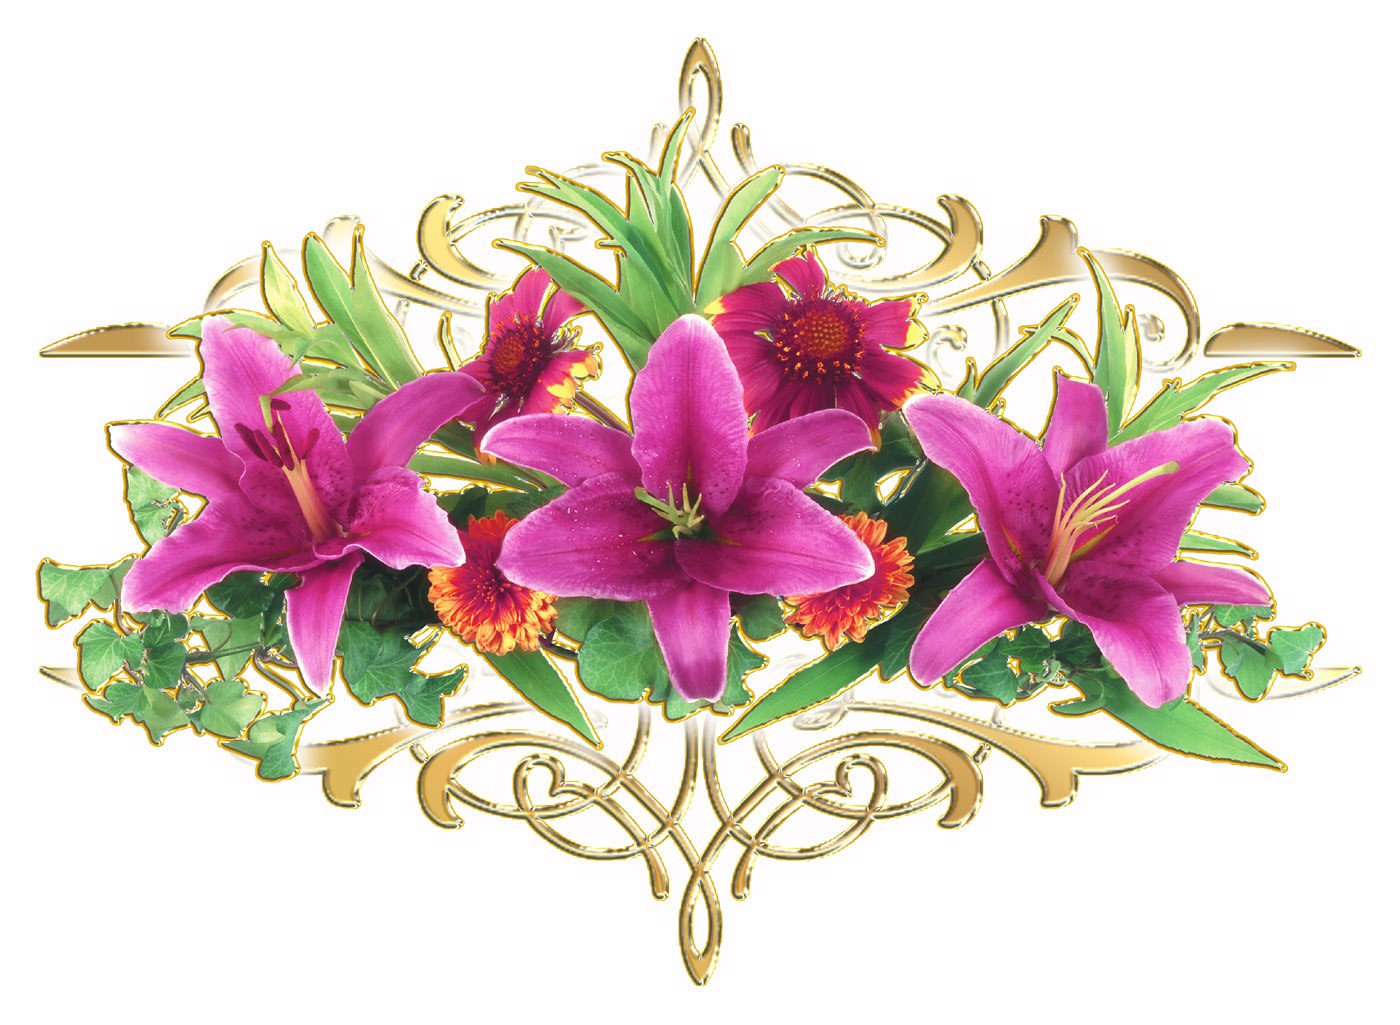 百合 ゆり の花の写真 画像 フリー素材 No 312 紫 ユリ ゴールド 模様